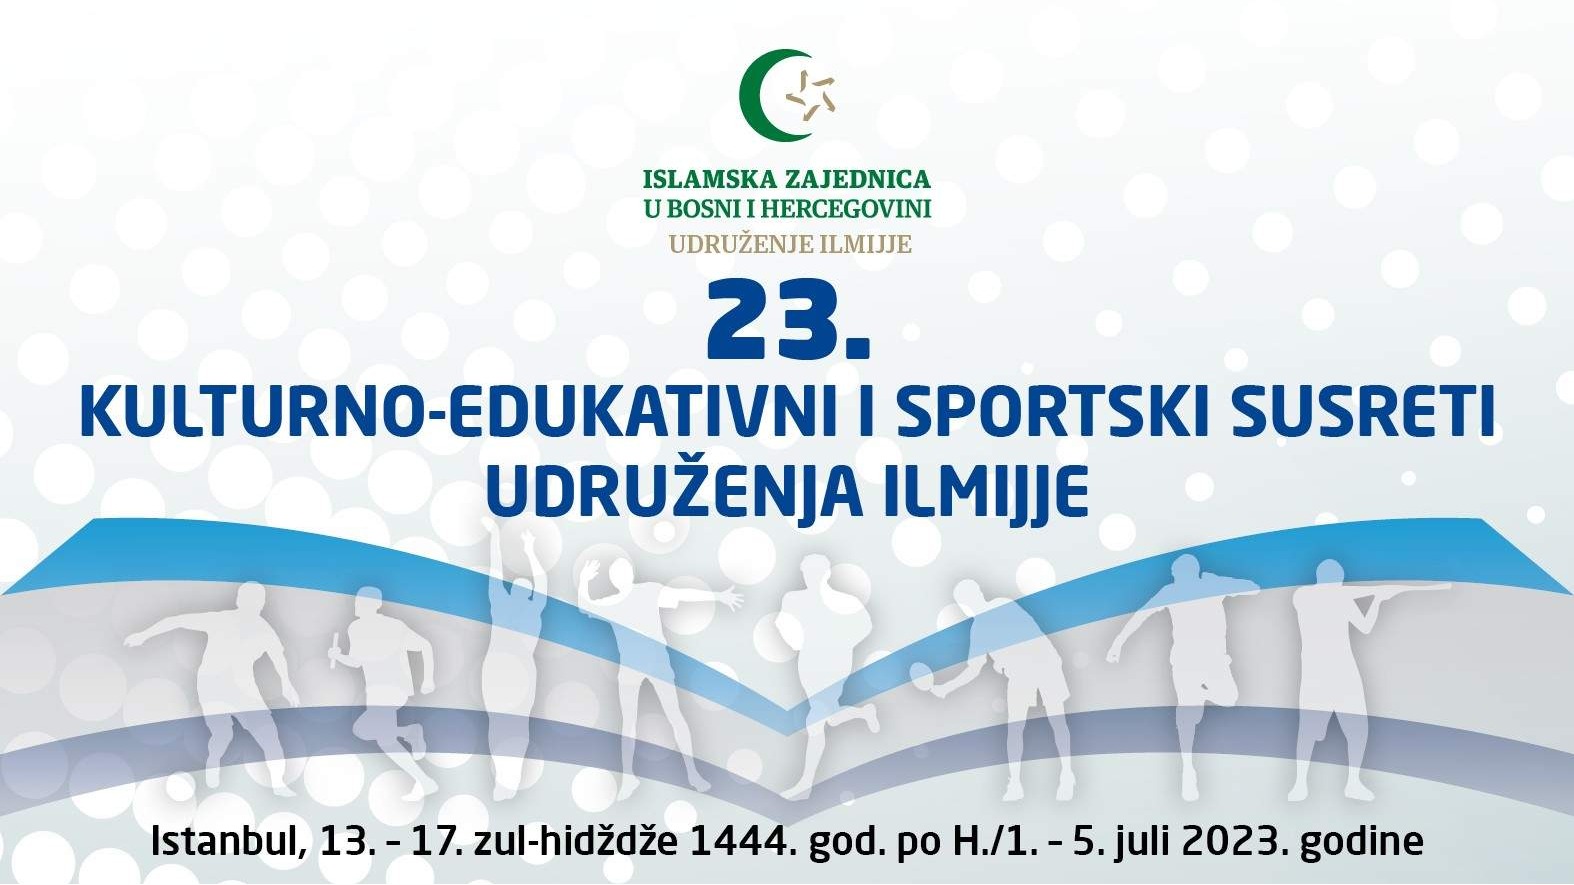 23. kulturno-edukativni i sportski susreti članova udruženja Ilmijje i uposlenika iz od 1. - 5. jula u Istanbulu 